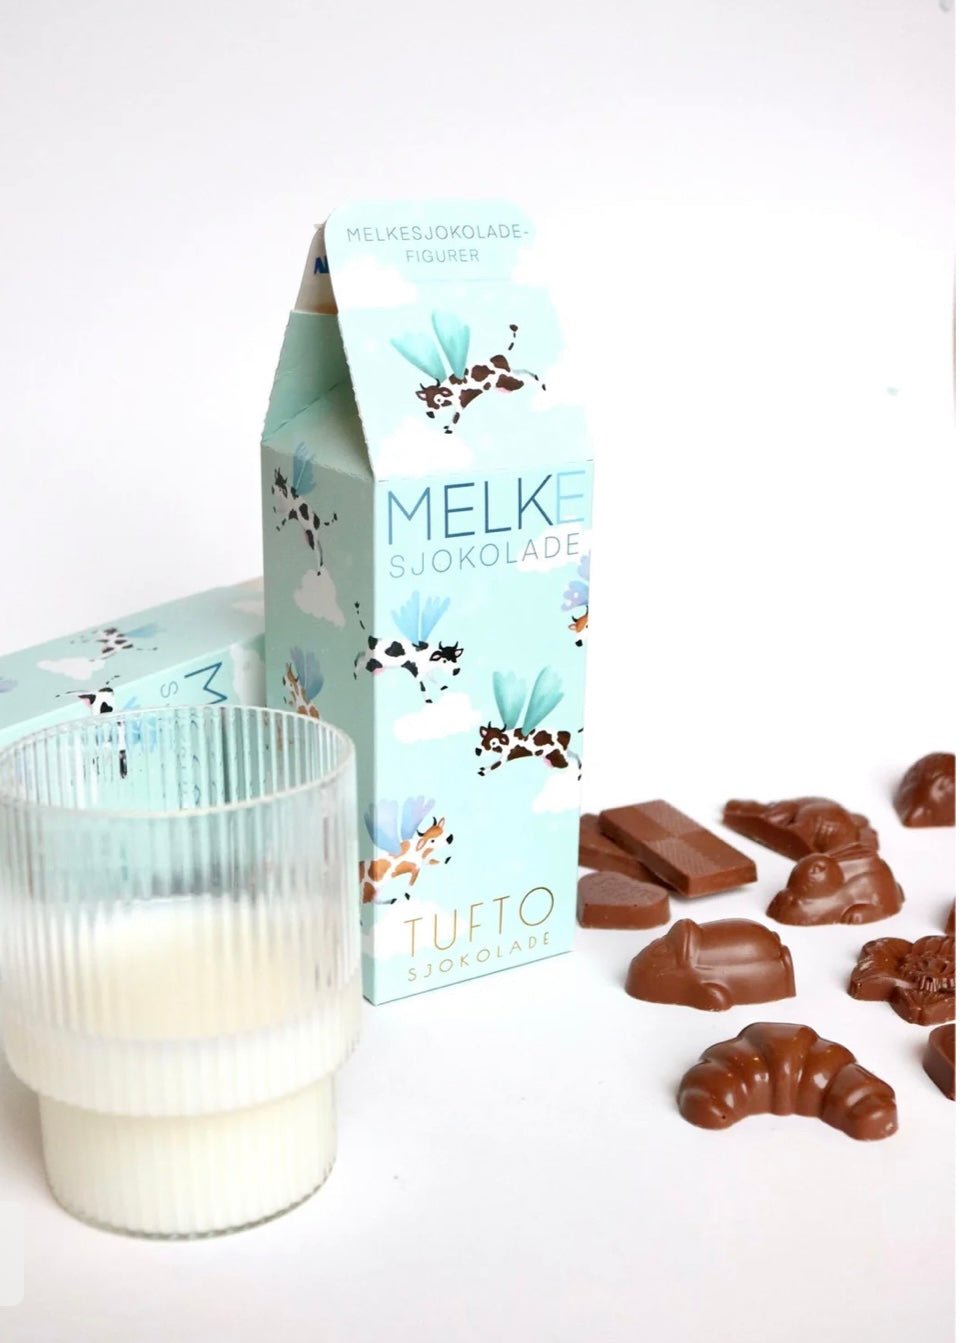 Melkekartong fylt av melkesjokolade fra Tufto.